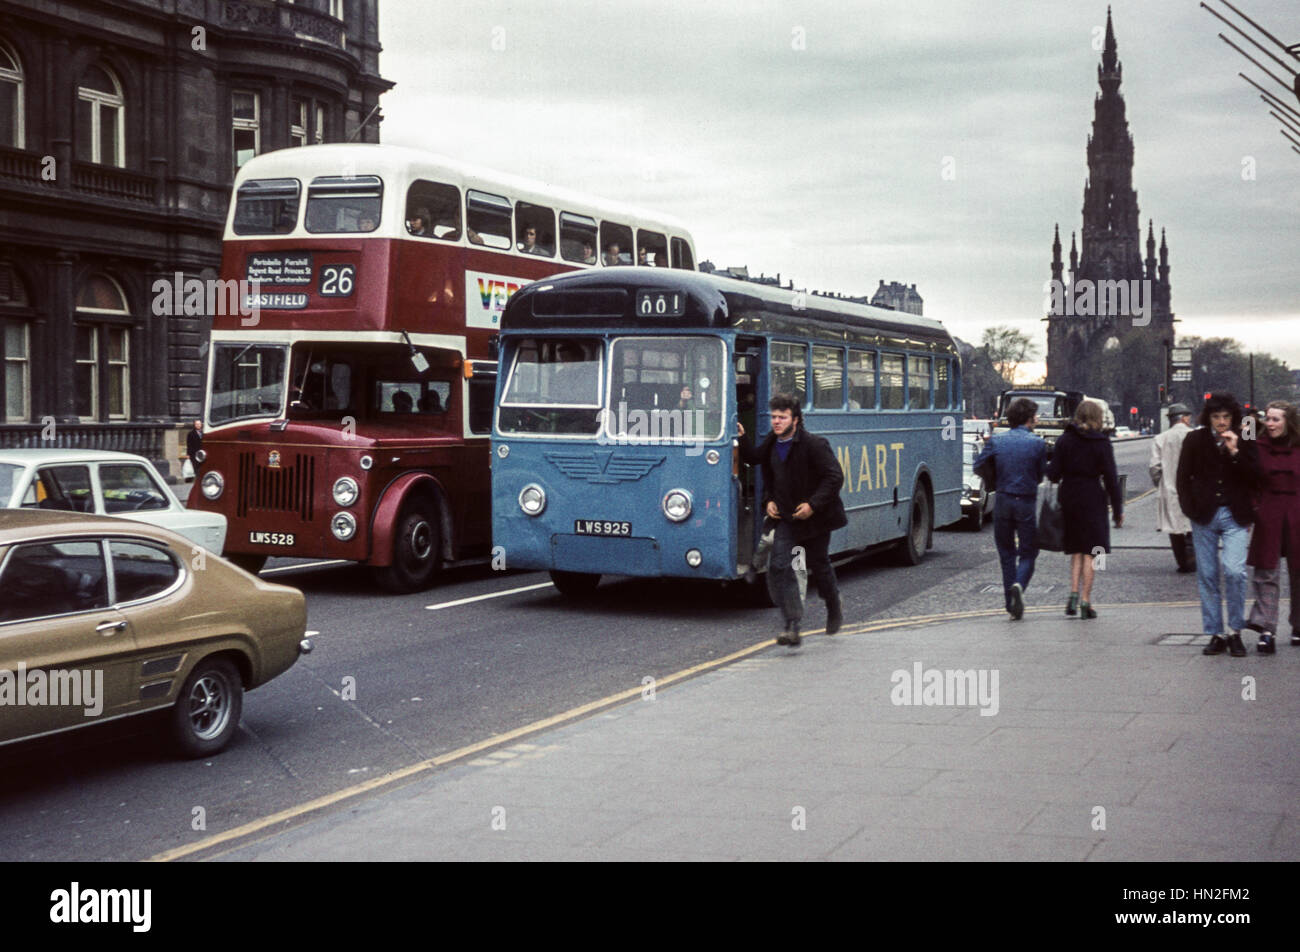 Edimburgo, Reino Unido - 1973: Vintage imagen de autobuses en el tráfico de la calle Princes Street en Edimburgo. Scottish Omnibus monocoach ejecutar por el contratista 'Smart' (registro LWS925) y Edimburgo double decker (número de registro LWS528). Foto de stock